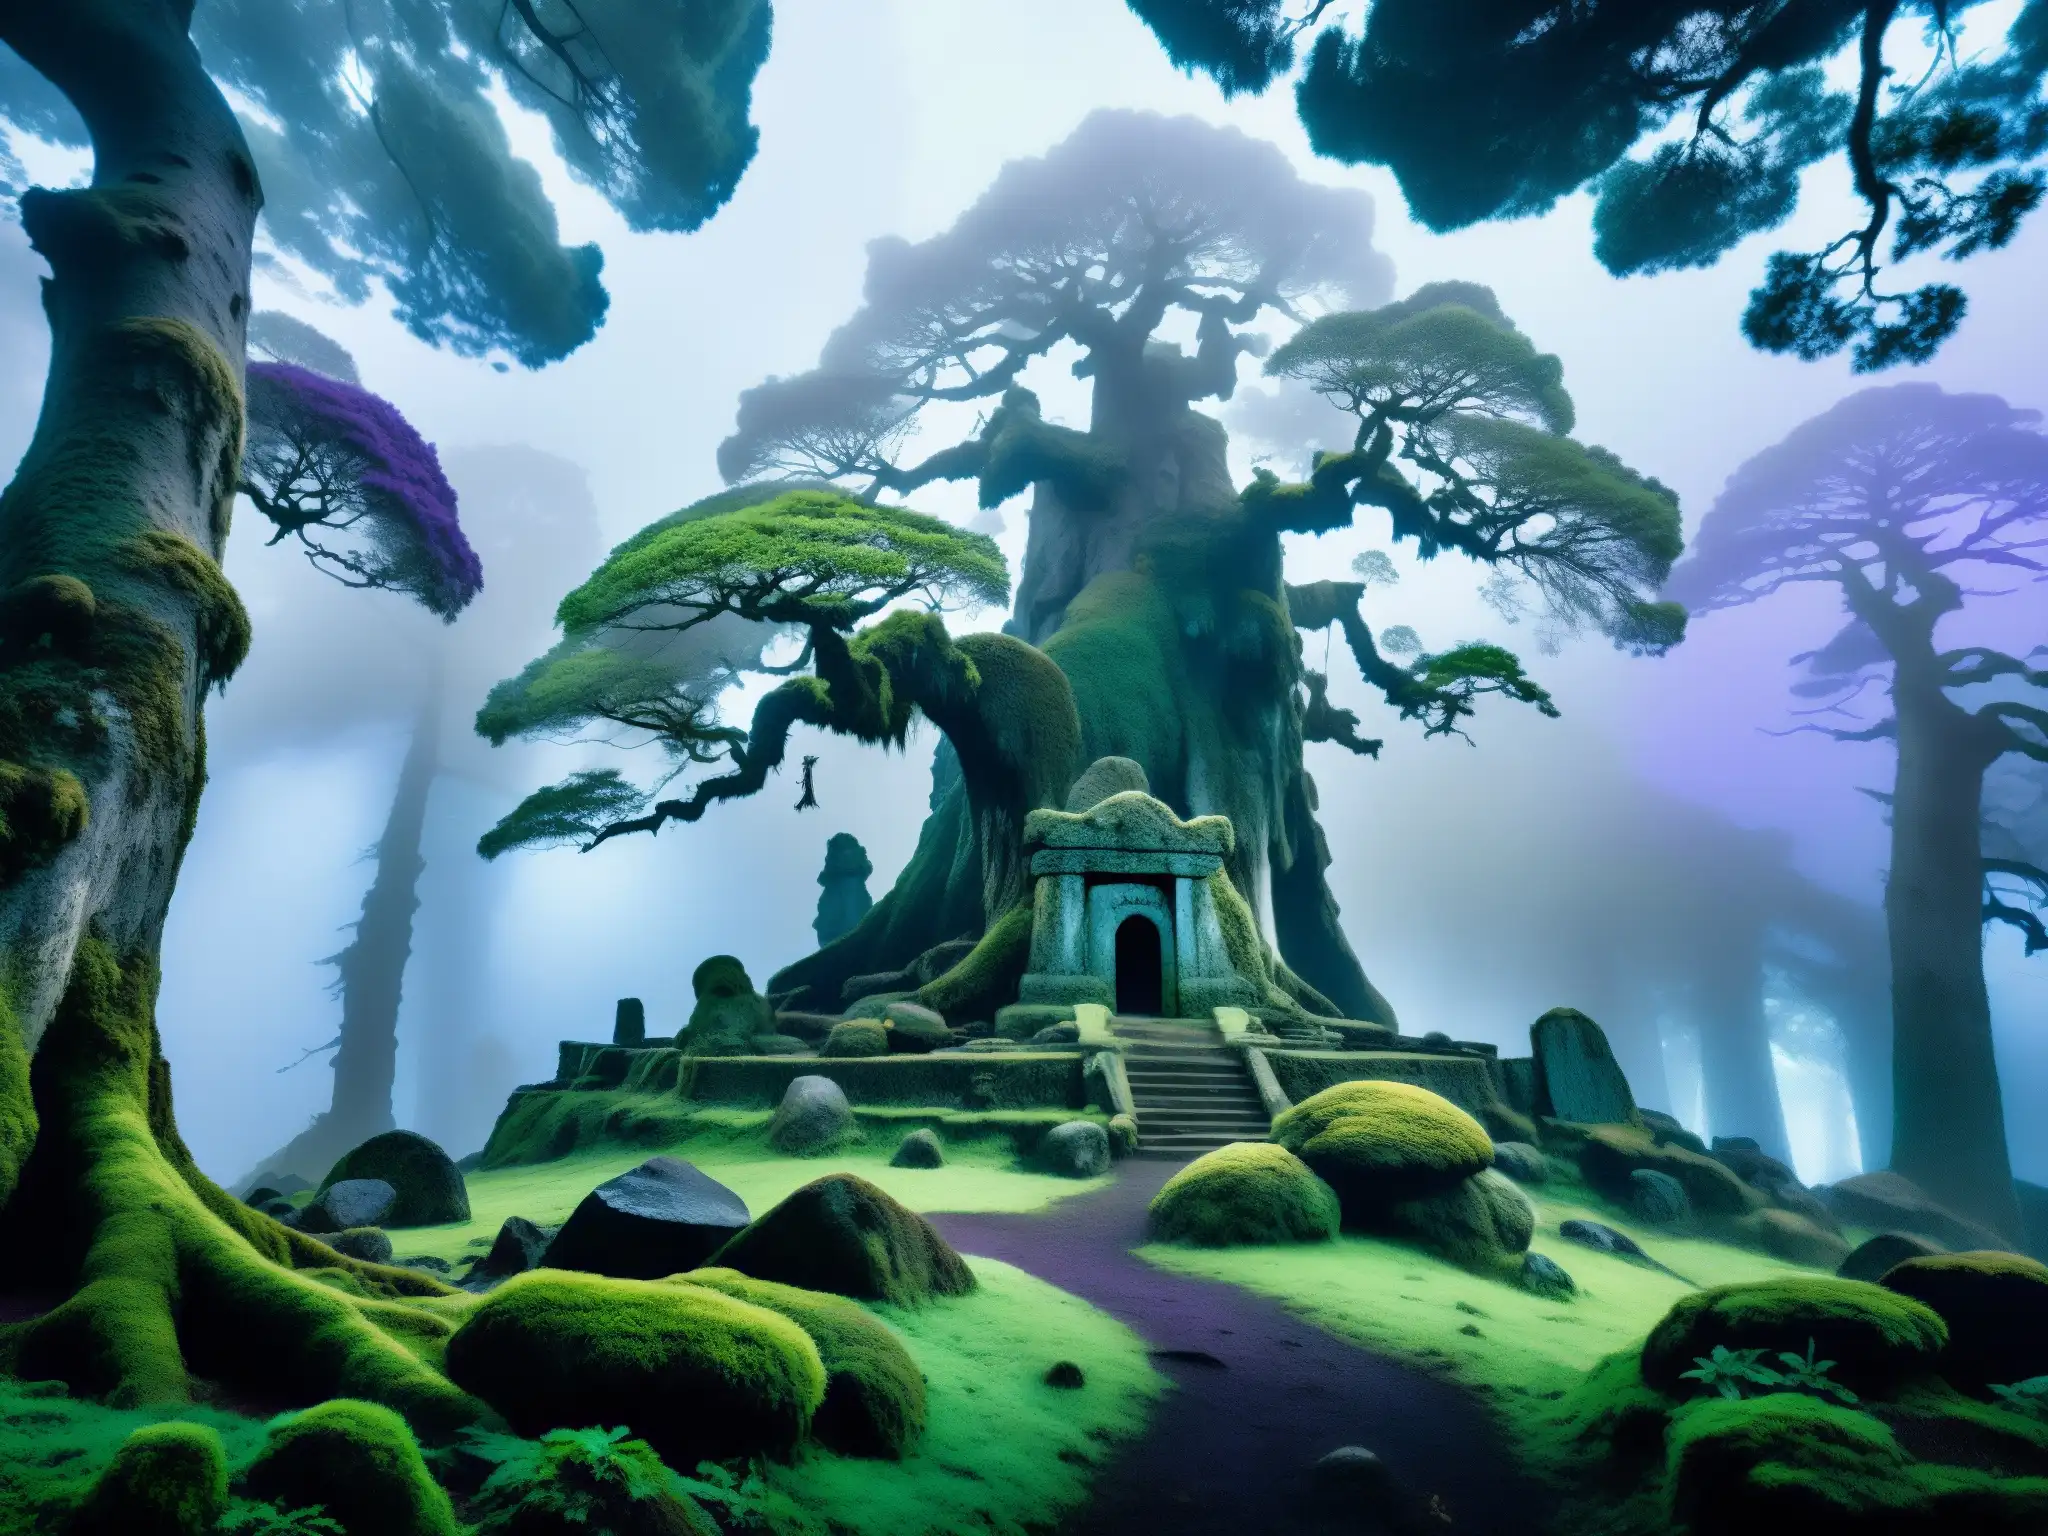 Un bosque misterioso con árboles antiguos, luces azules y moradas danzantes, y un monumento de piedra cubierto de musgo y líquenes